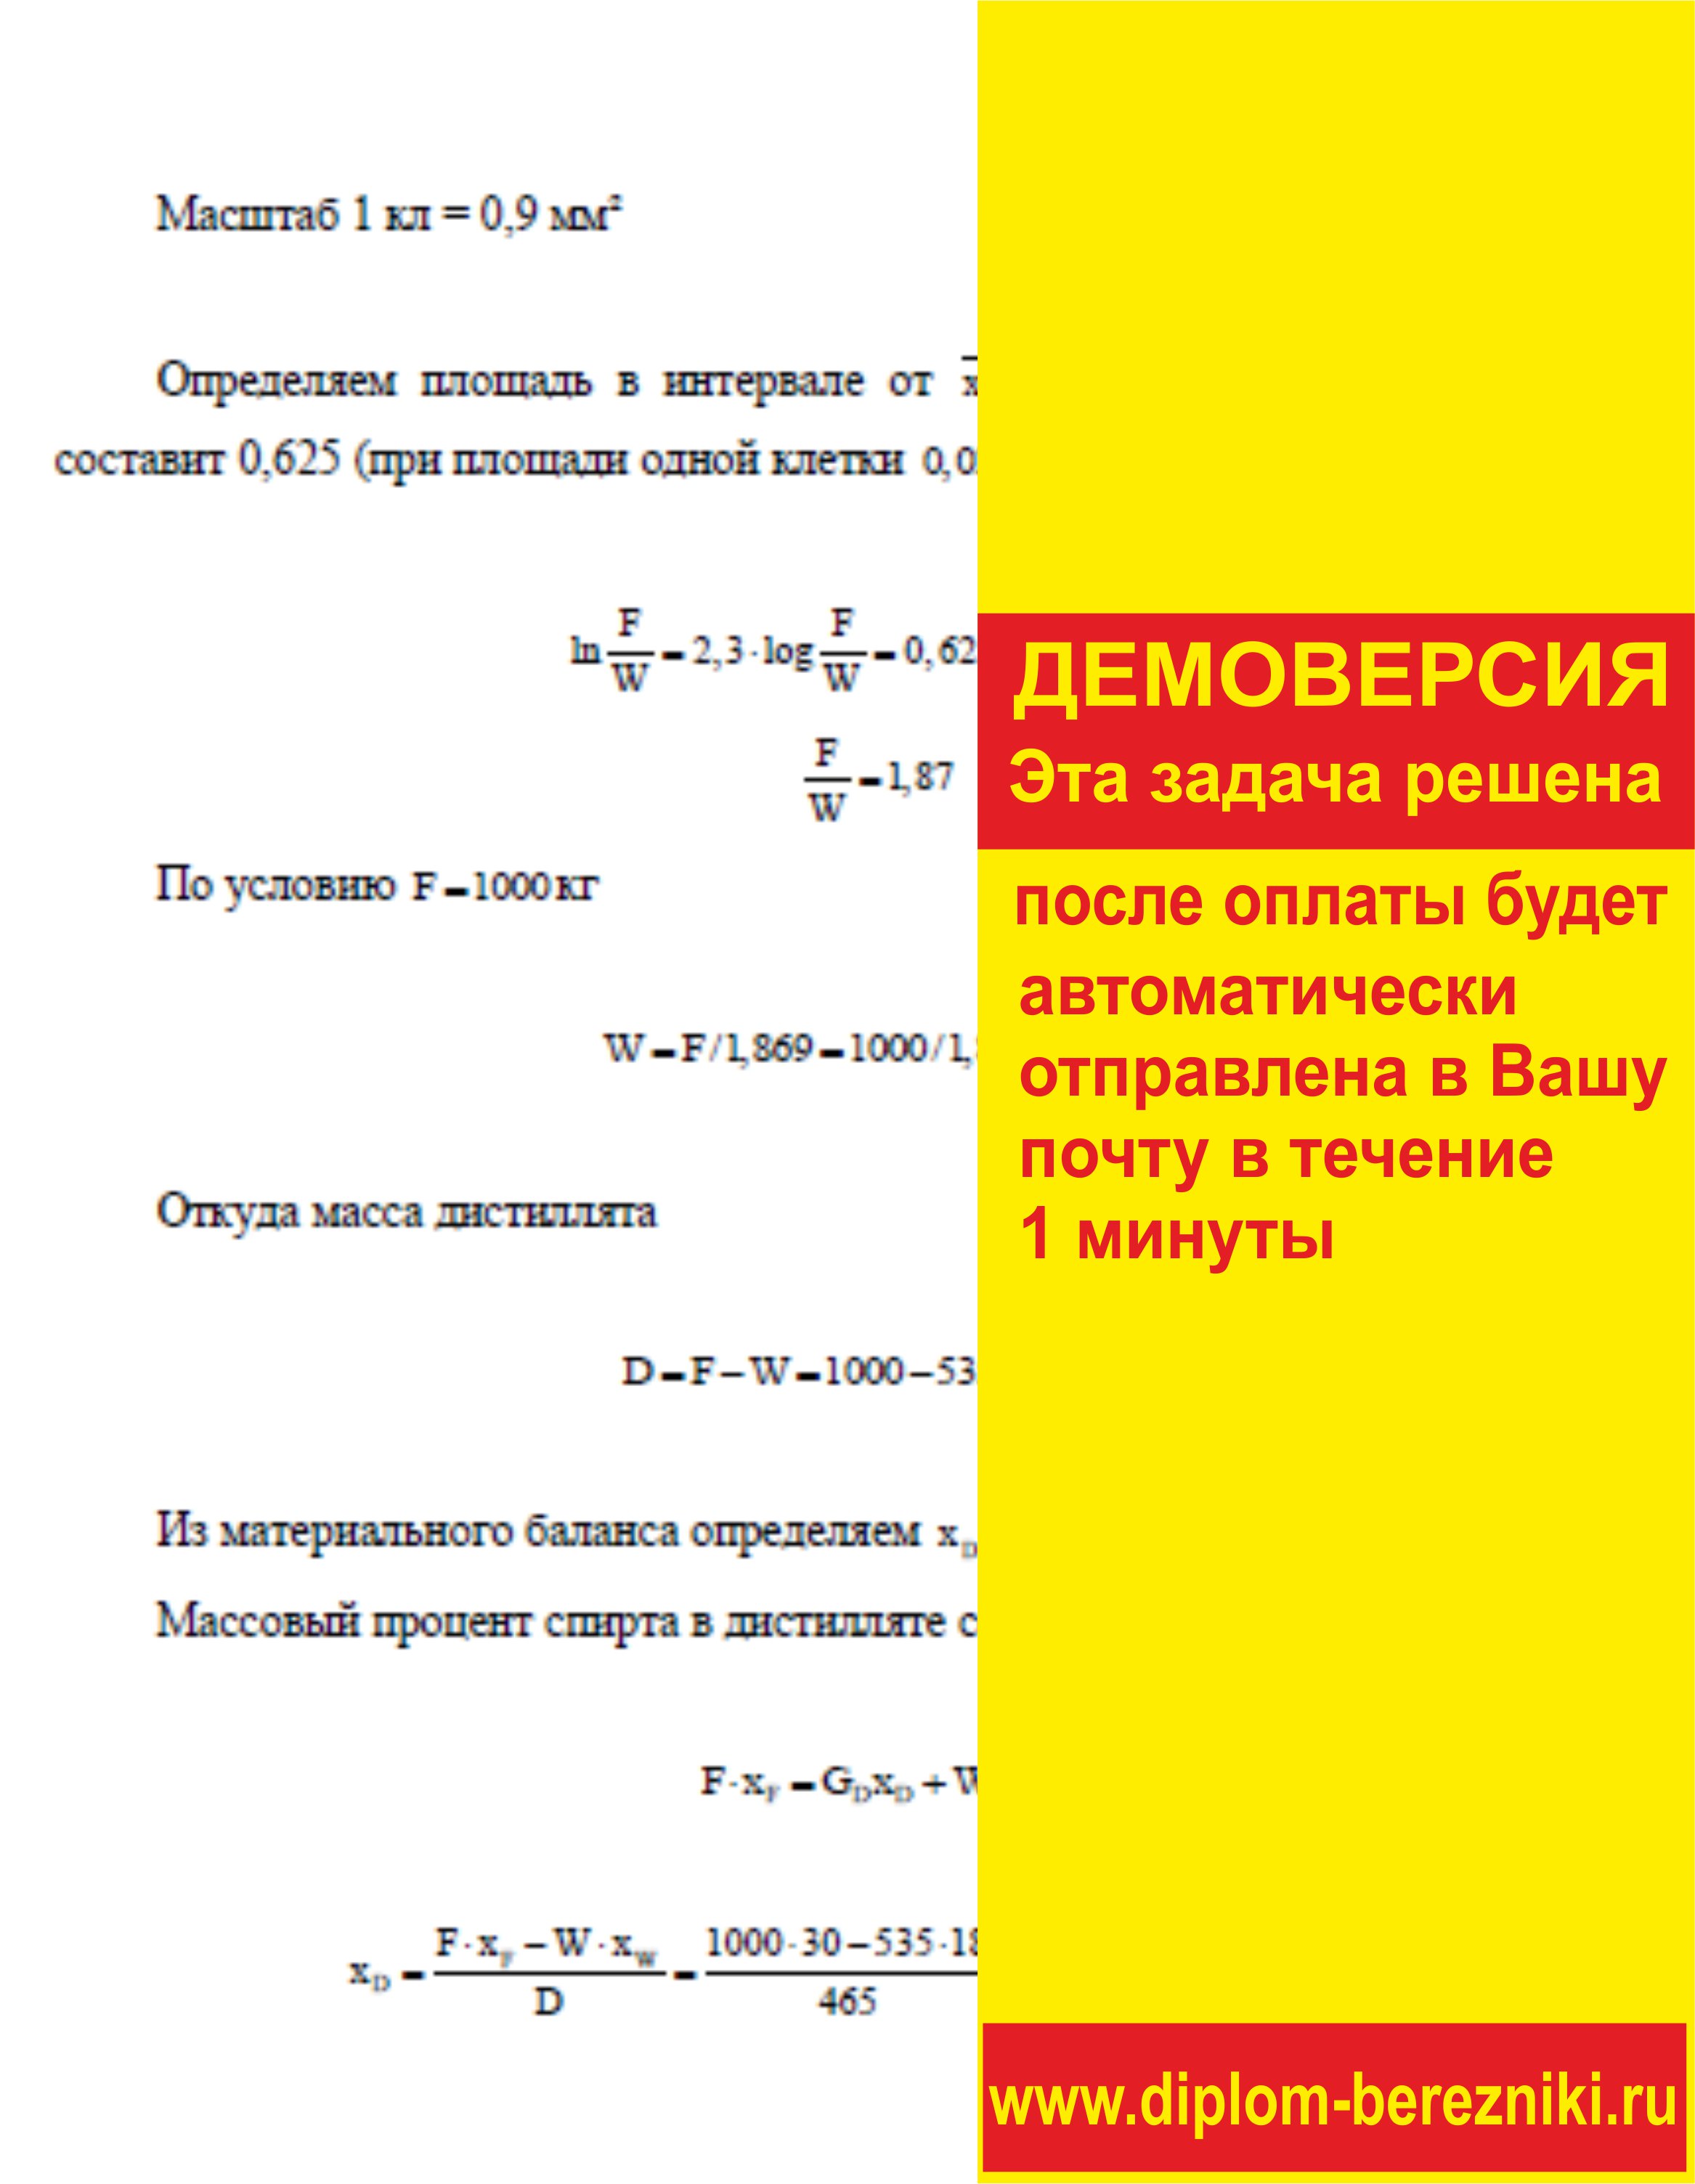 Решение задачи 7.7 по ПАХТ из задачника Павлова Романкова Носкова